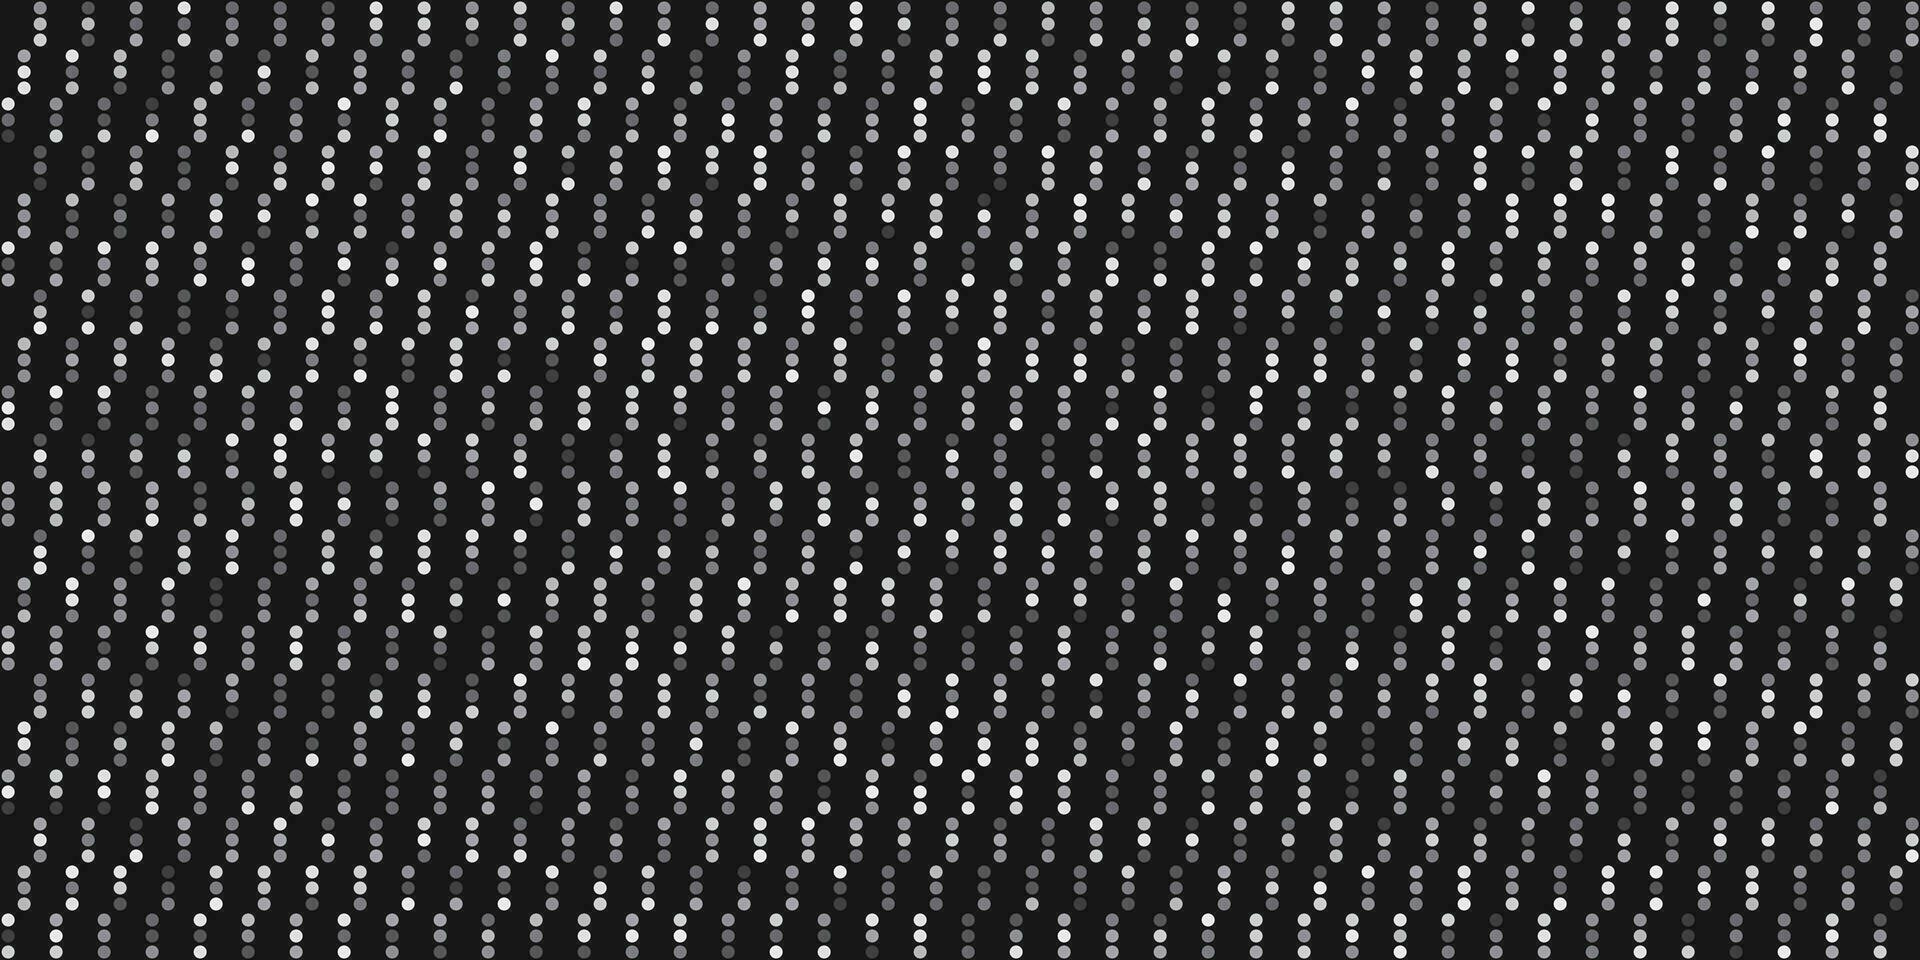 zwart en wit abstract achtergrond polka punt patroon vector